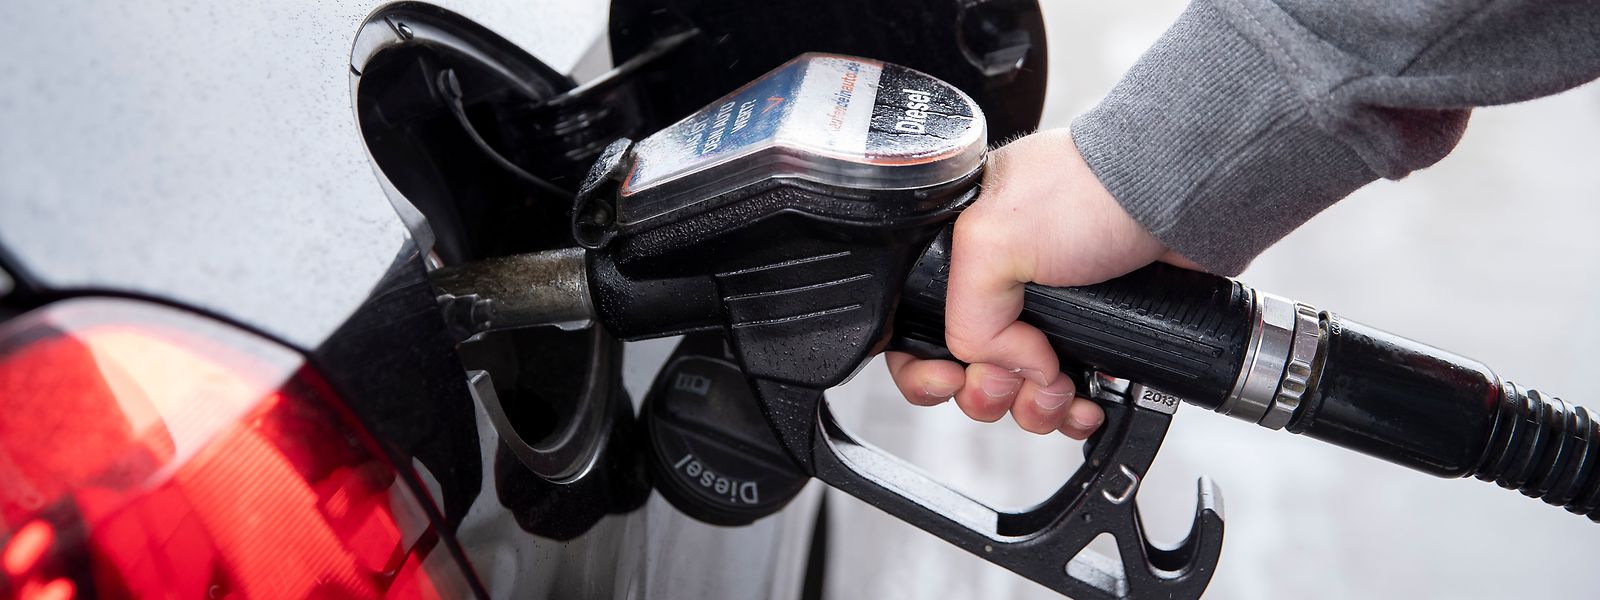 Diesel kostet ab Samstag wieder leicht mehr als das 95er Benzin - trotz Preissenkungen.